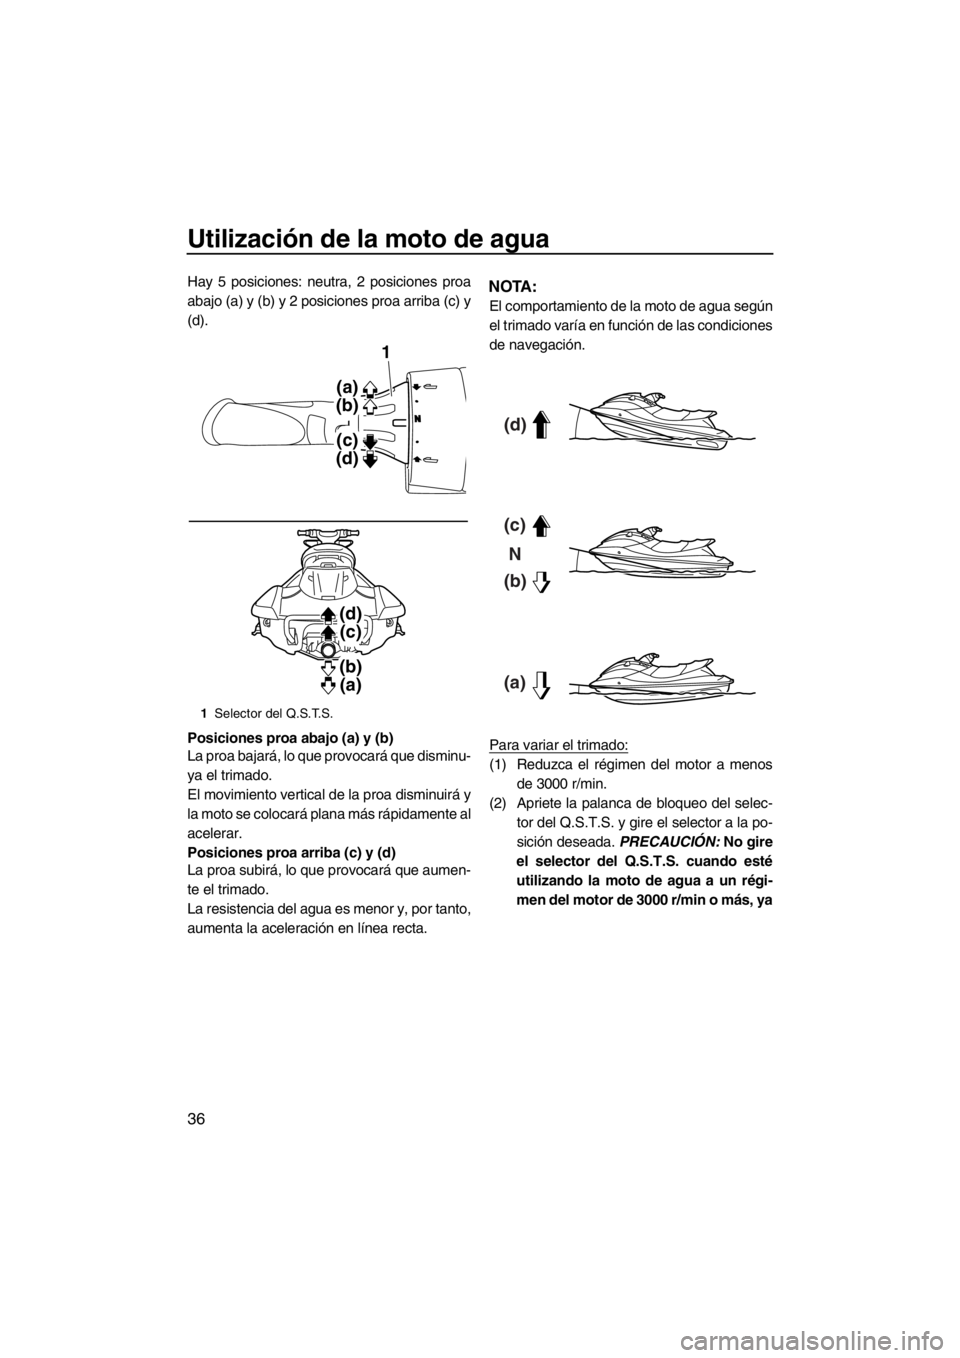 YAMAHA FX HO CRUISER 2012  Manuale de Empleo (in Spanish) Utilización de la moto de agua
36
Hay 5 posiciones: neutra, 2 posiciones proa
abajo (a) y (b) y 2 posiciones proa arriba (c) y
(d).
Posiciones proa abajo (a) y (b)
La proa bajará, lo que provocará 